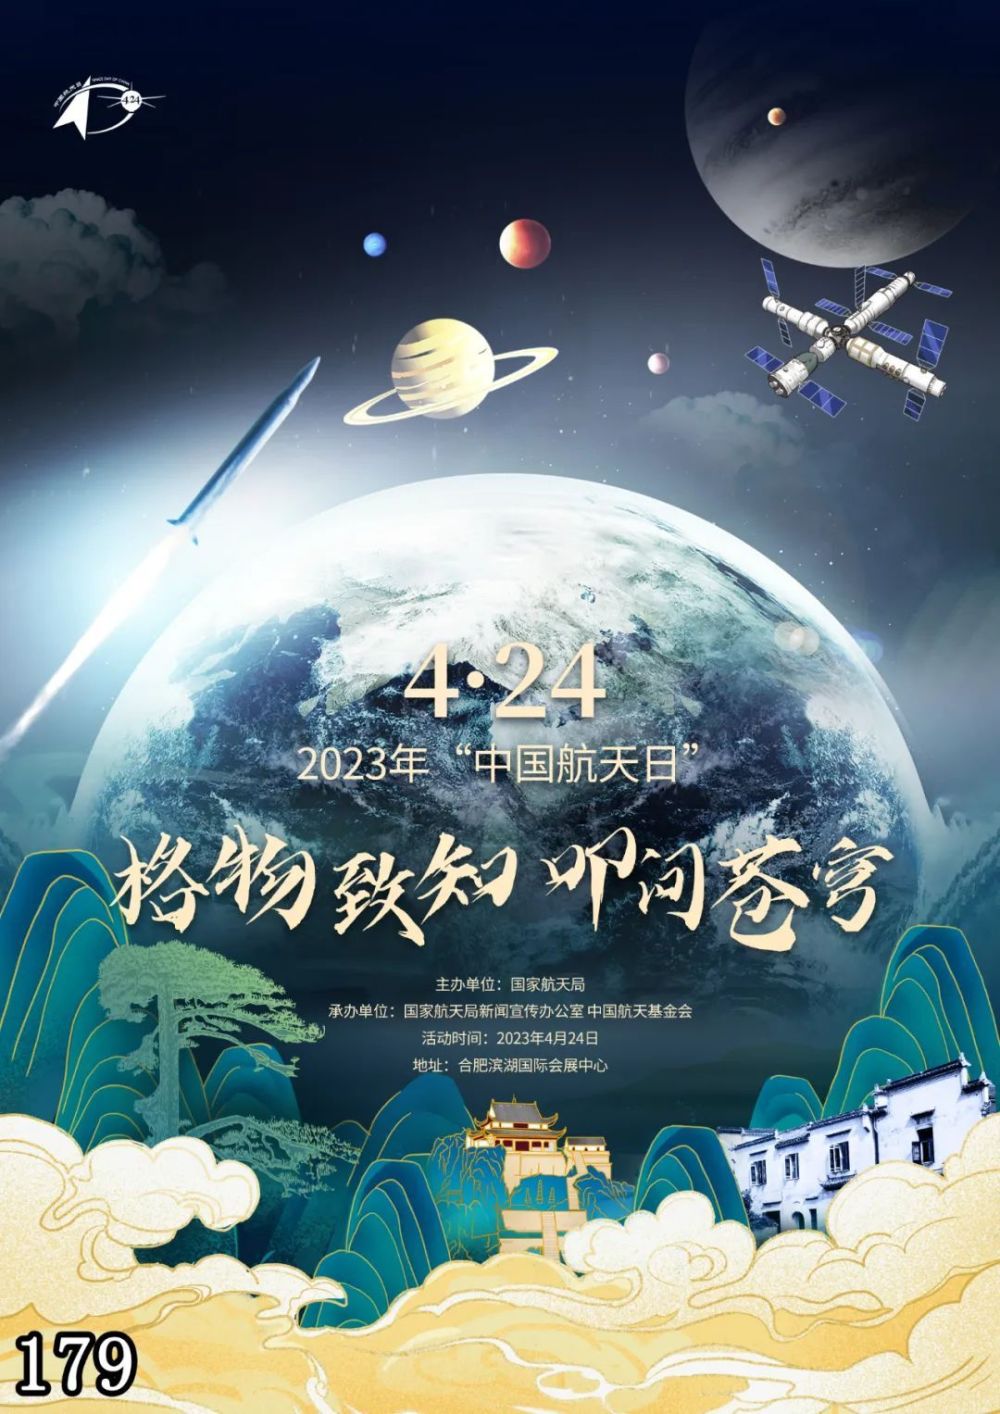 中国航天日的设立图片